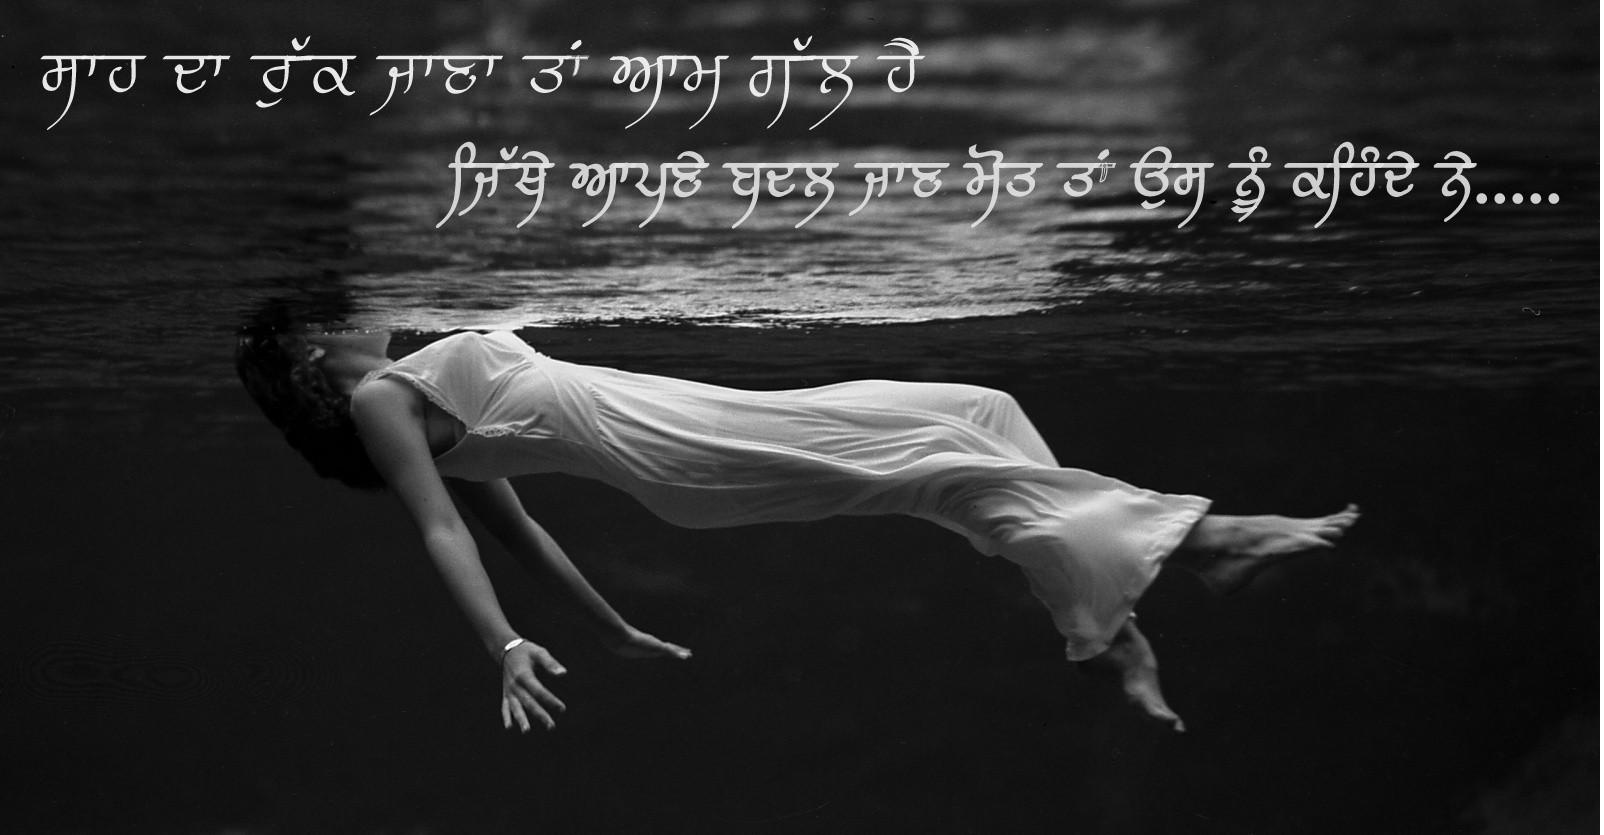 Punjabi Quotes - Drowning Girls In Water - 1604x835 Wallpaper 